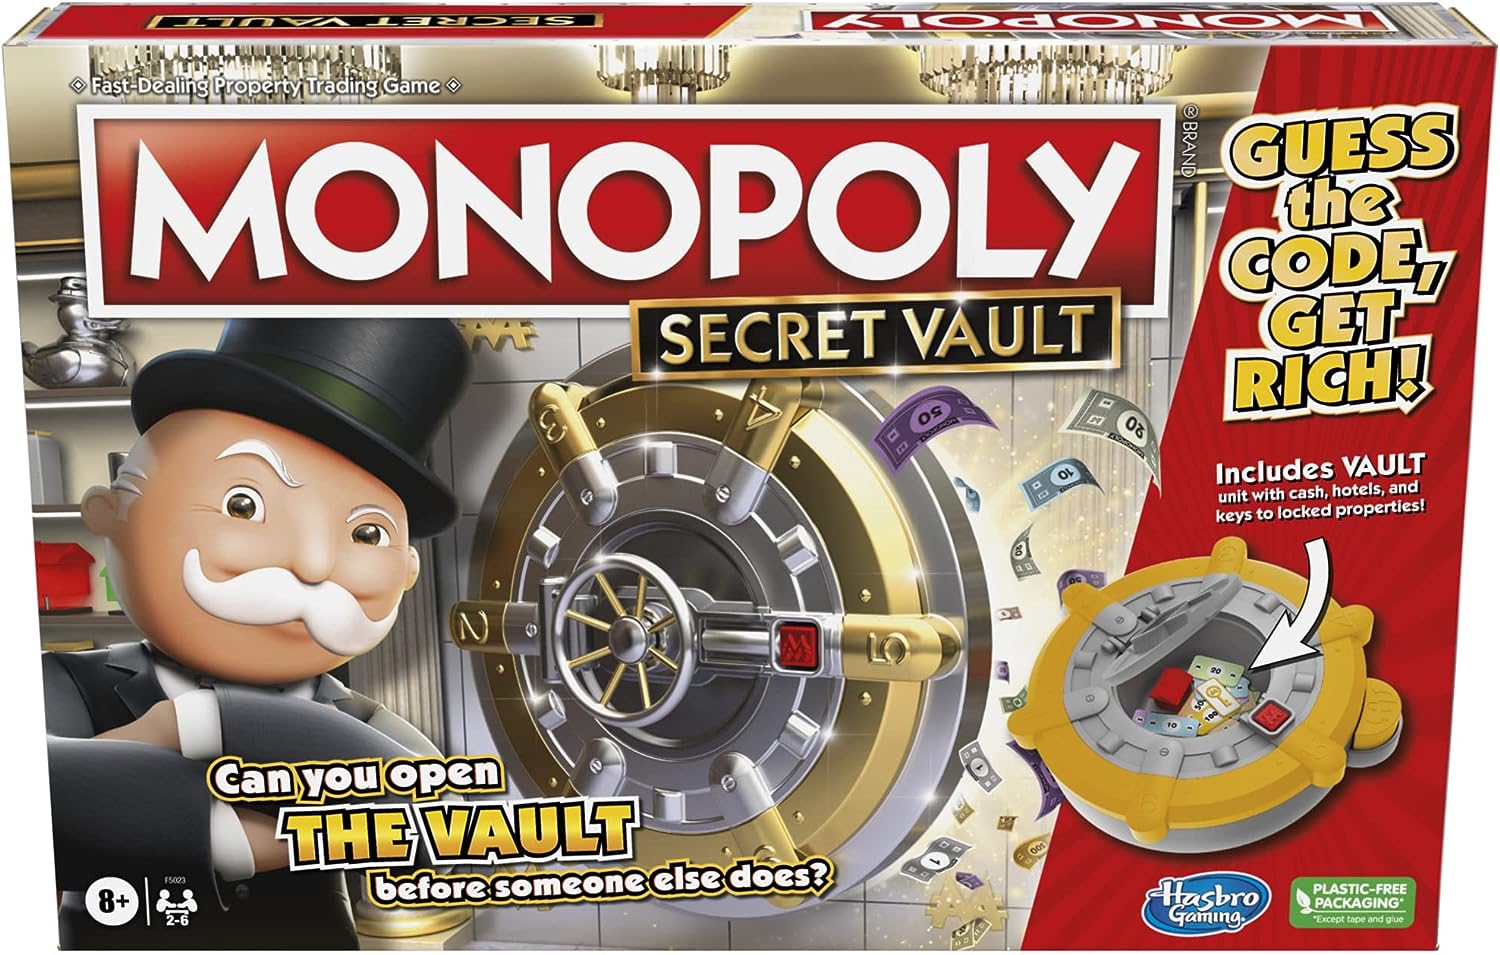 Monopoly Secret Vault